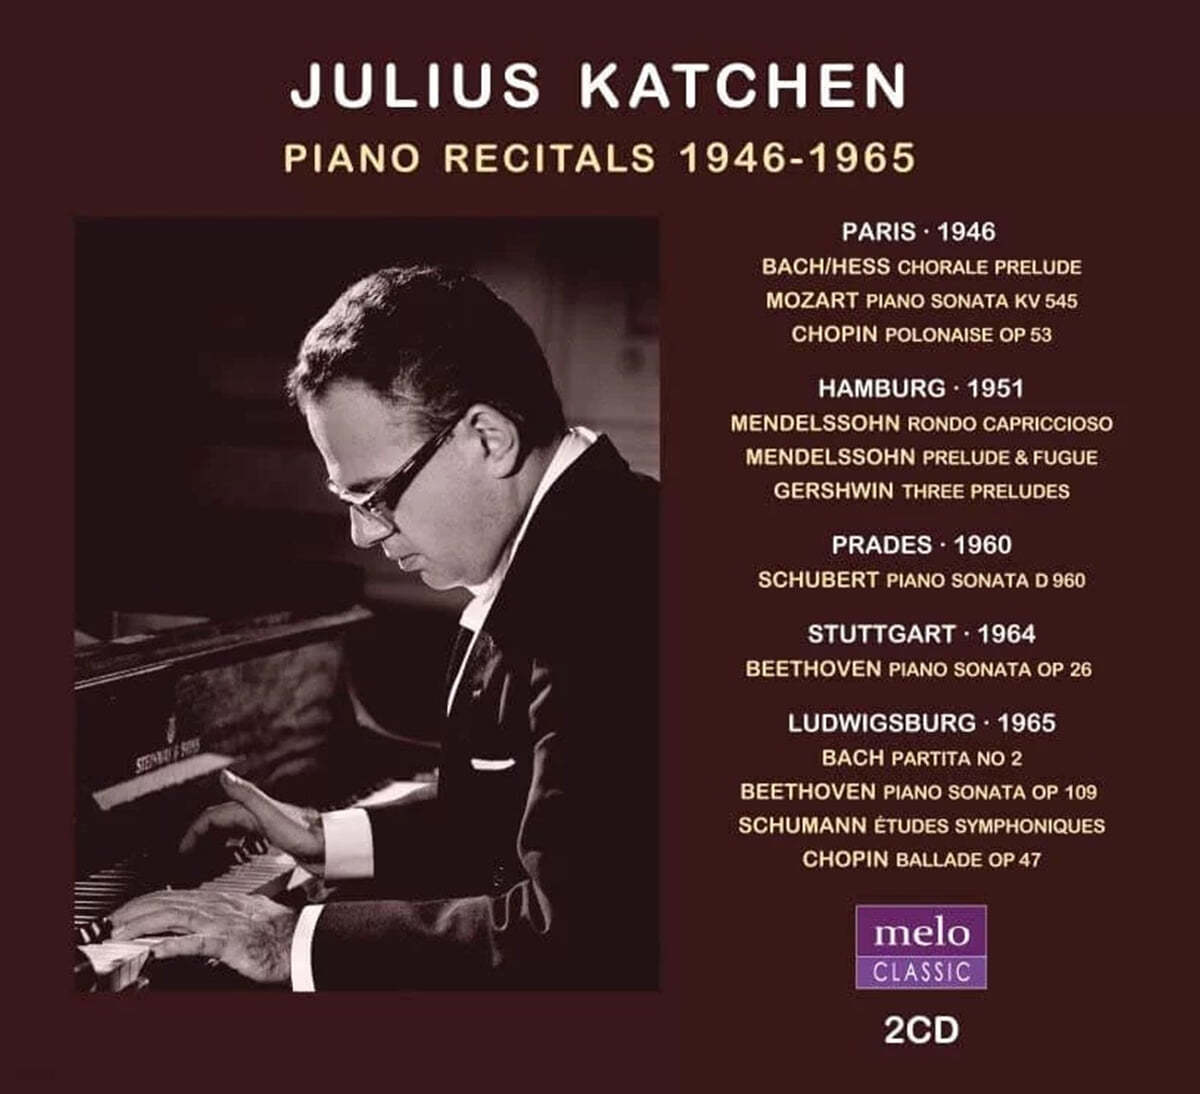 Julius Katchen 피아노 리사이틀 실황 (Piano Recitals 1946-1965)